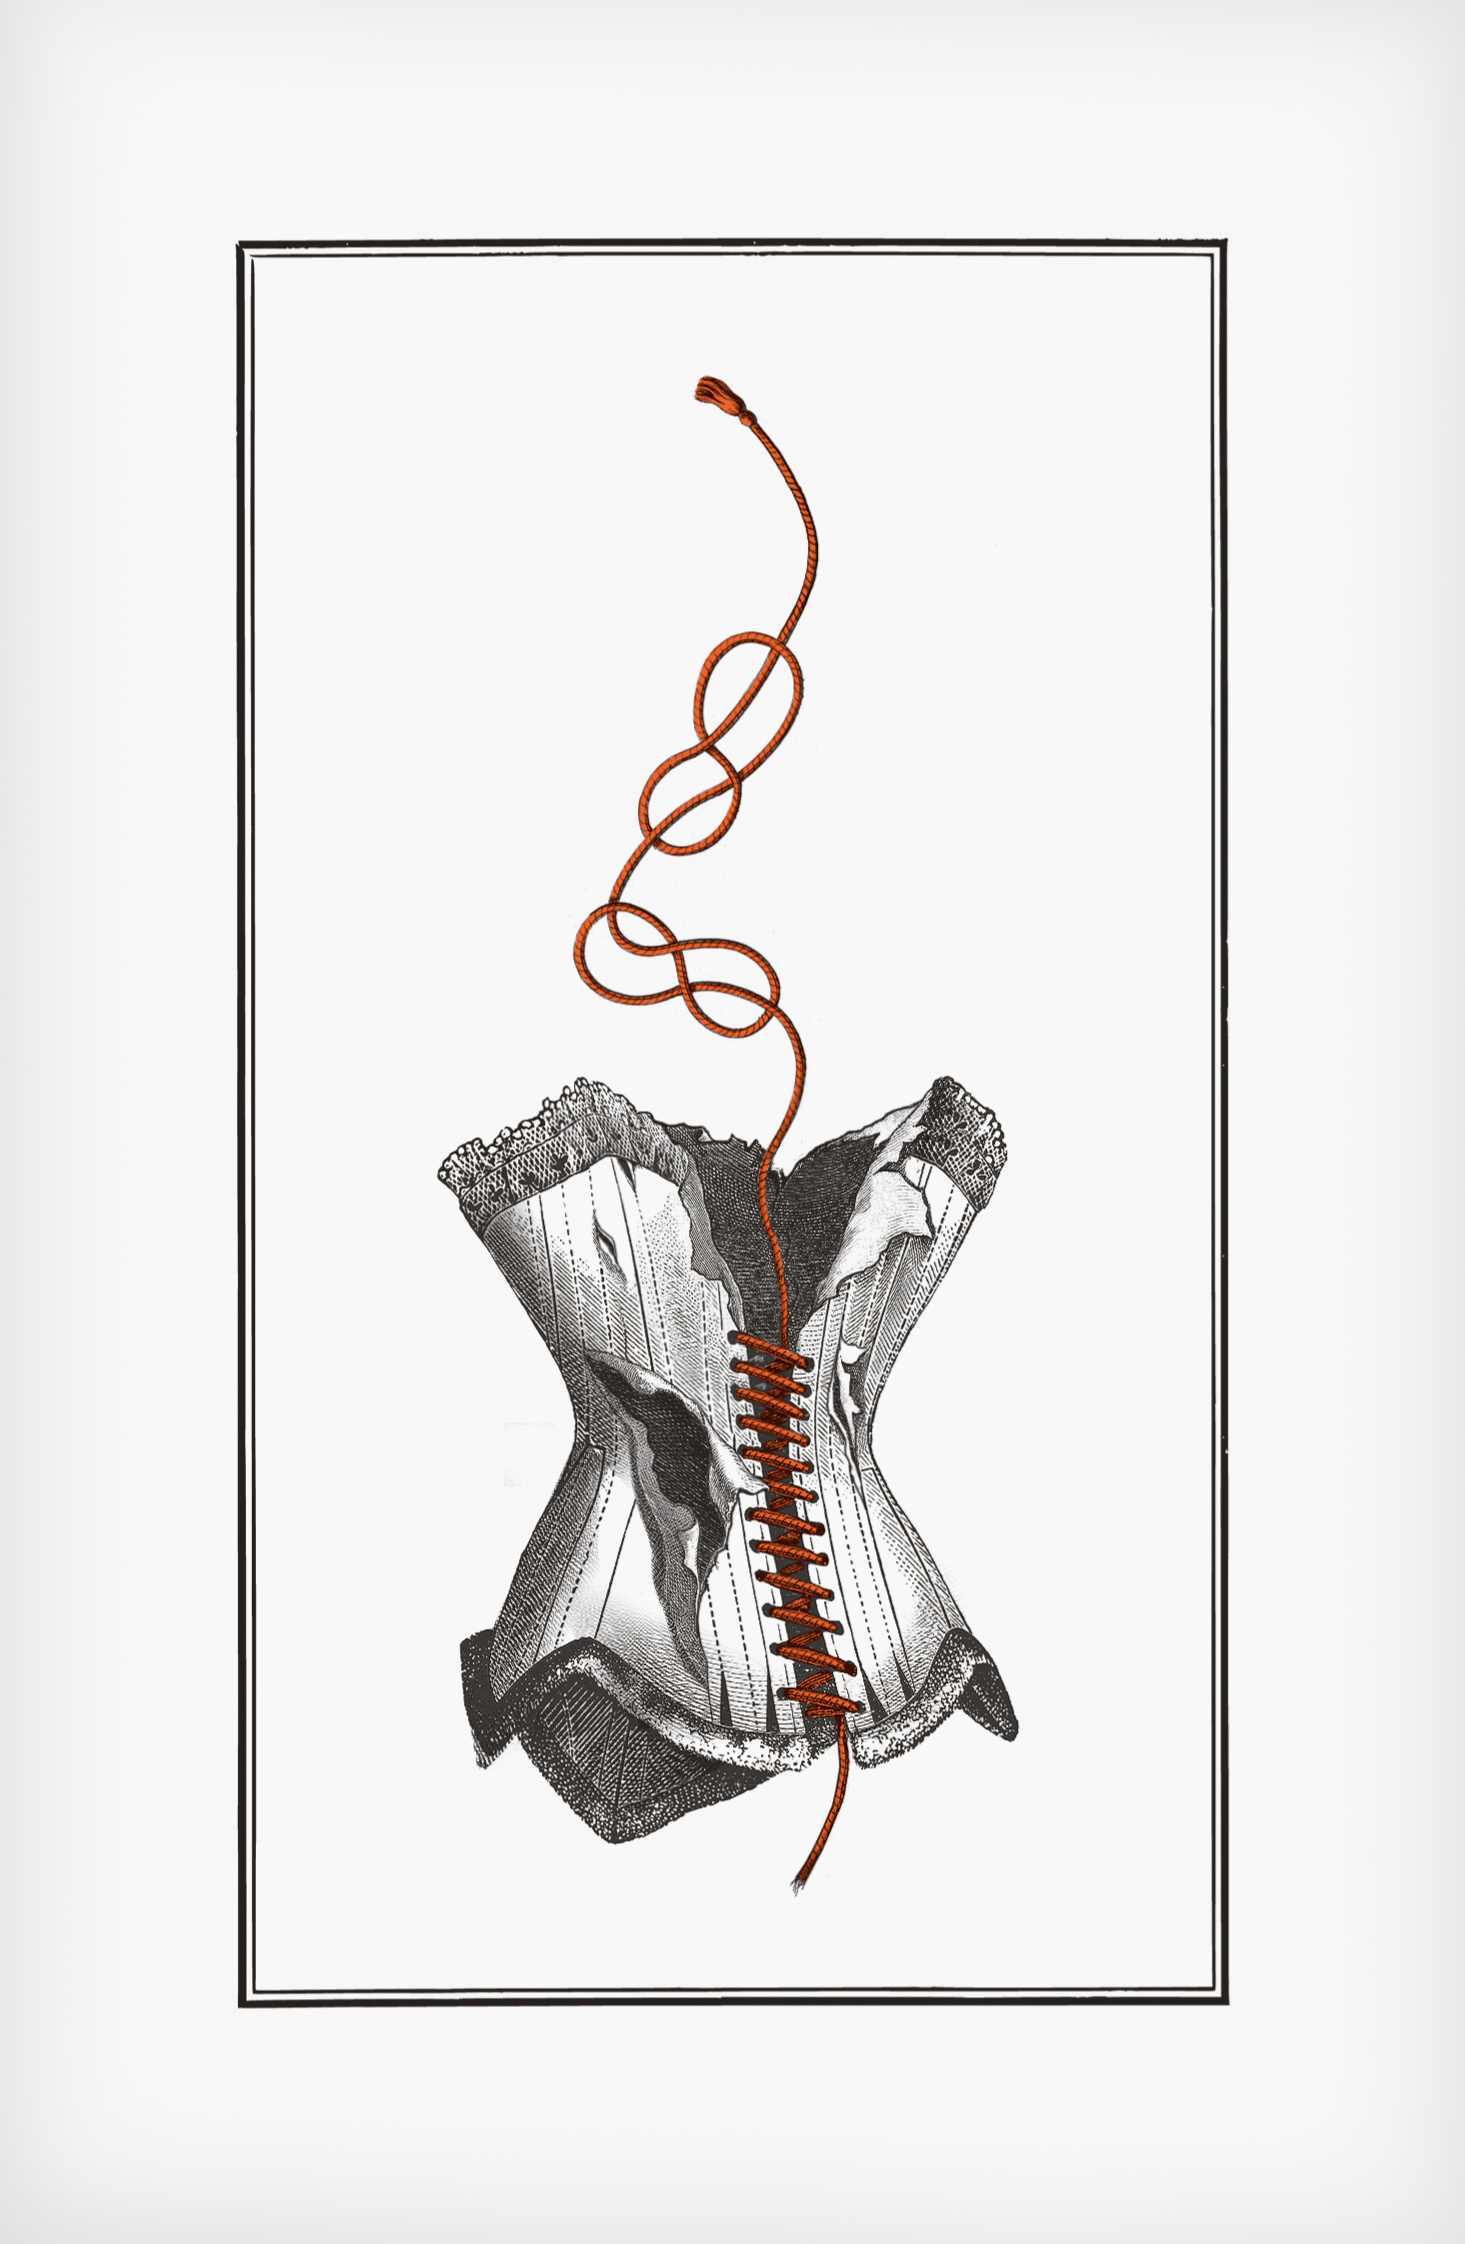 "Przedmiot uszkodzony", ilustracja z książki "Corpus Delicti" Jakuba Mikurdy i Jakuba Woynarowskiego, grafika: Jakub Woynarowski